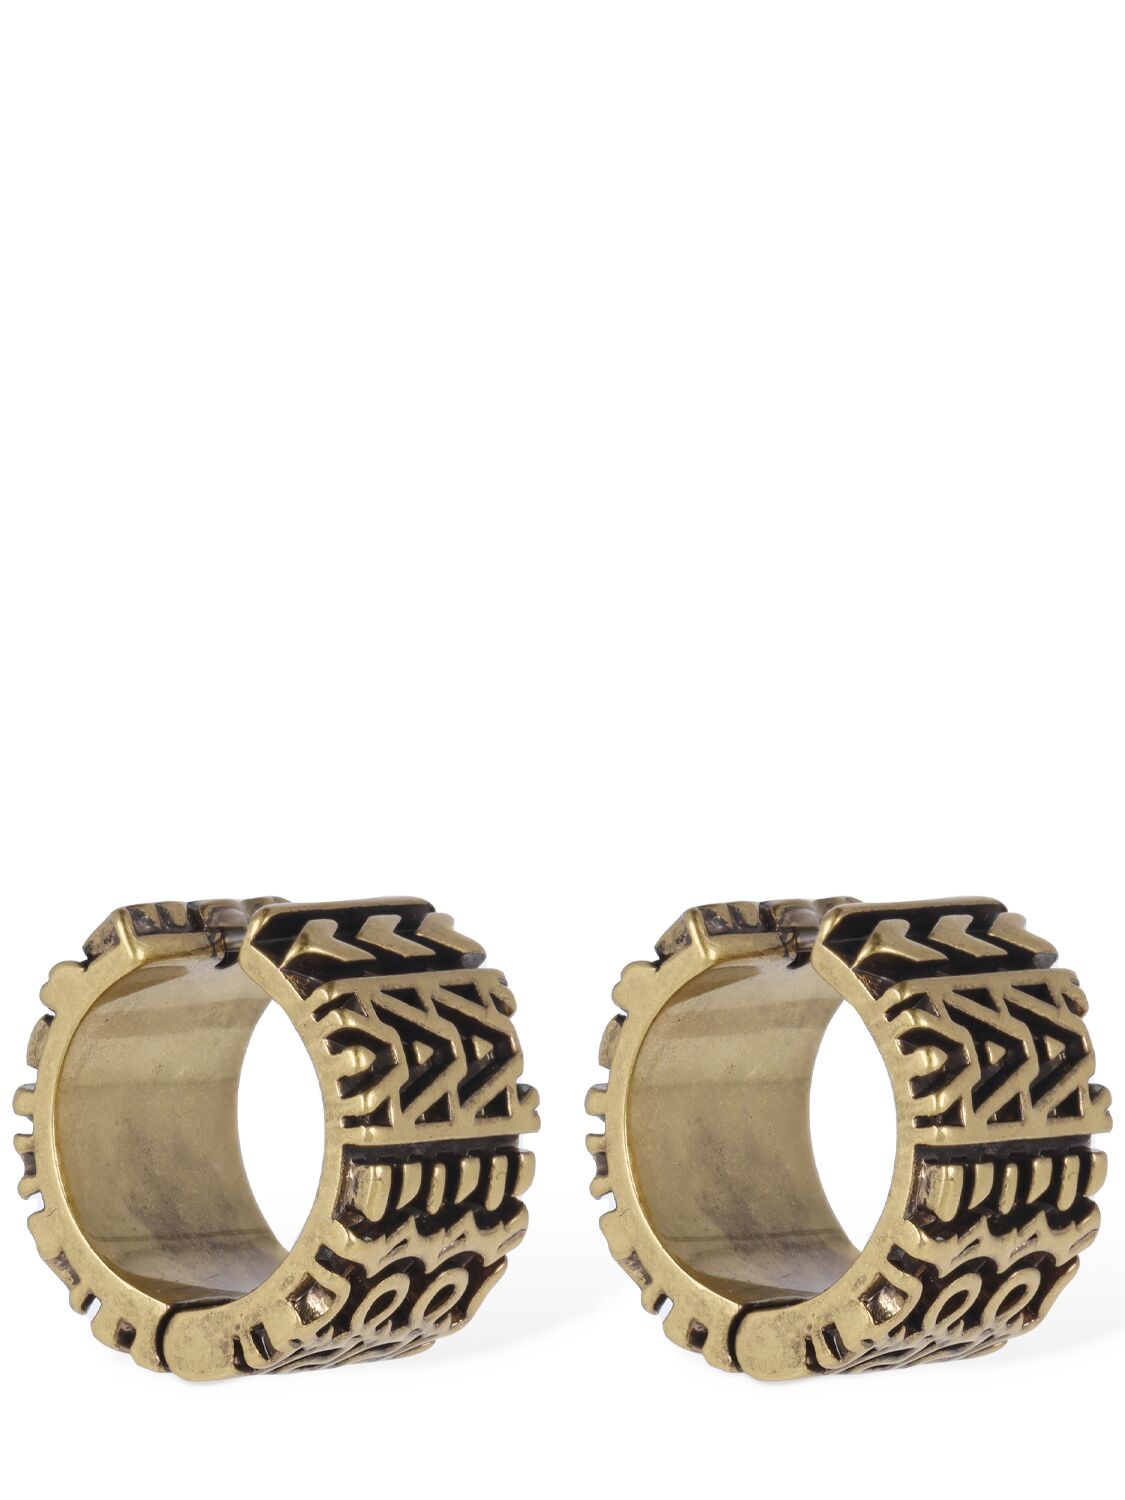 Shop Marc Jacobs Monogram Engraved Hoop Earrings In Aged Gold